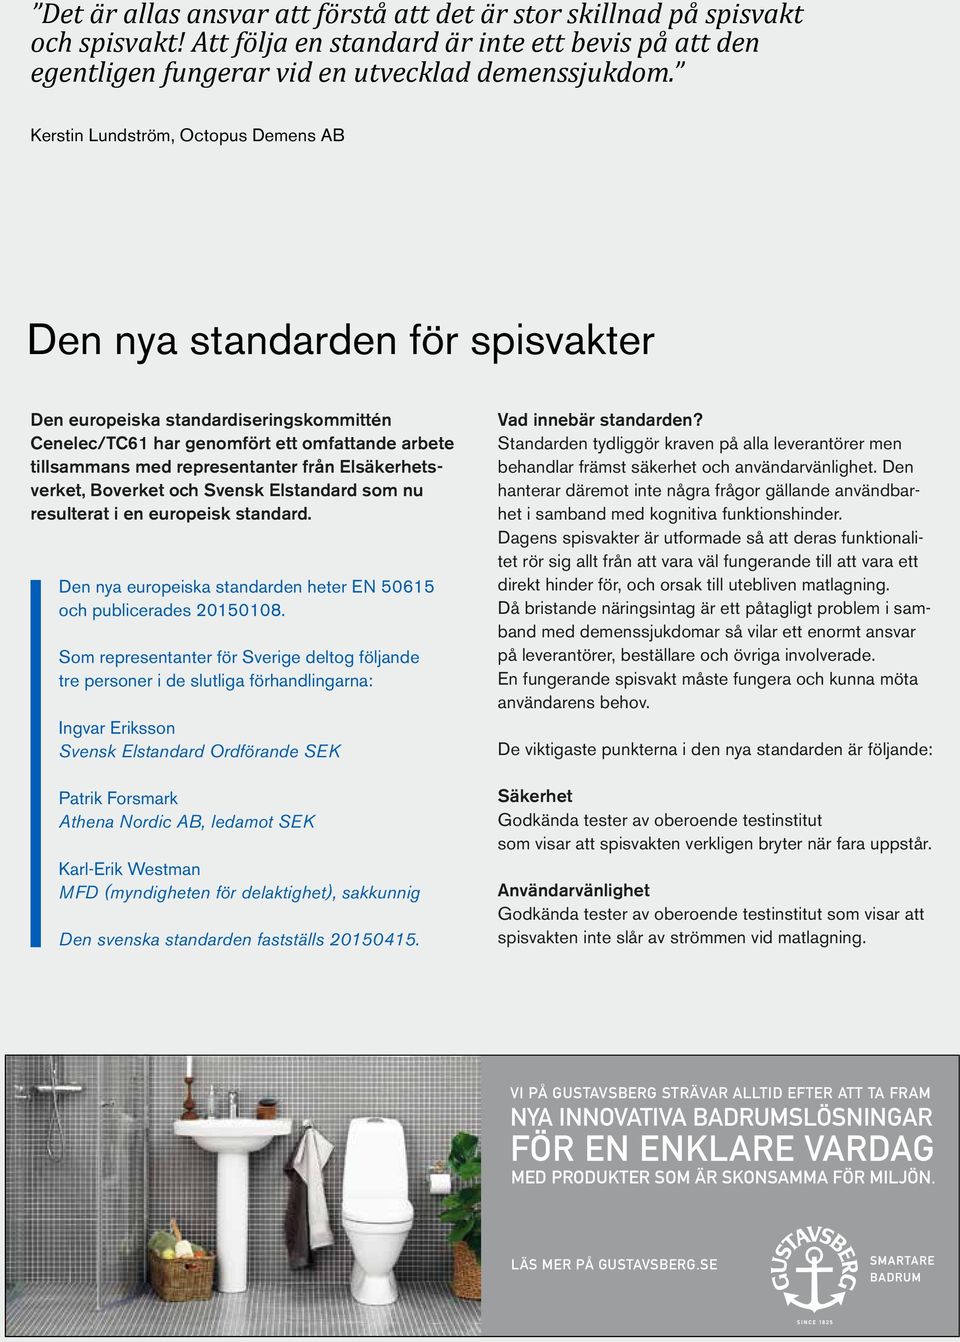 Elsäkerhetsverket, Boverket och Svensk Elstandard som nu resulterat i en europeisk standard. Den nya europeiska standarden heter EN 50615 och publicerades 20150108.